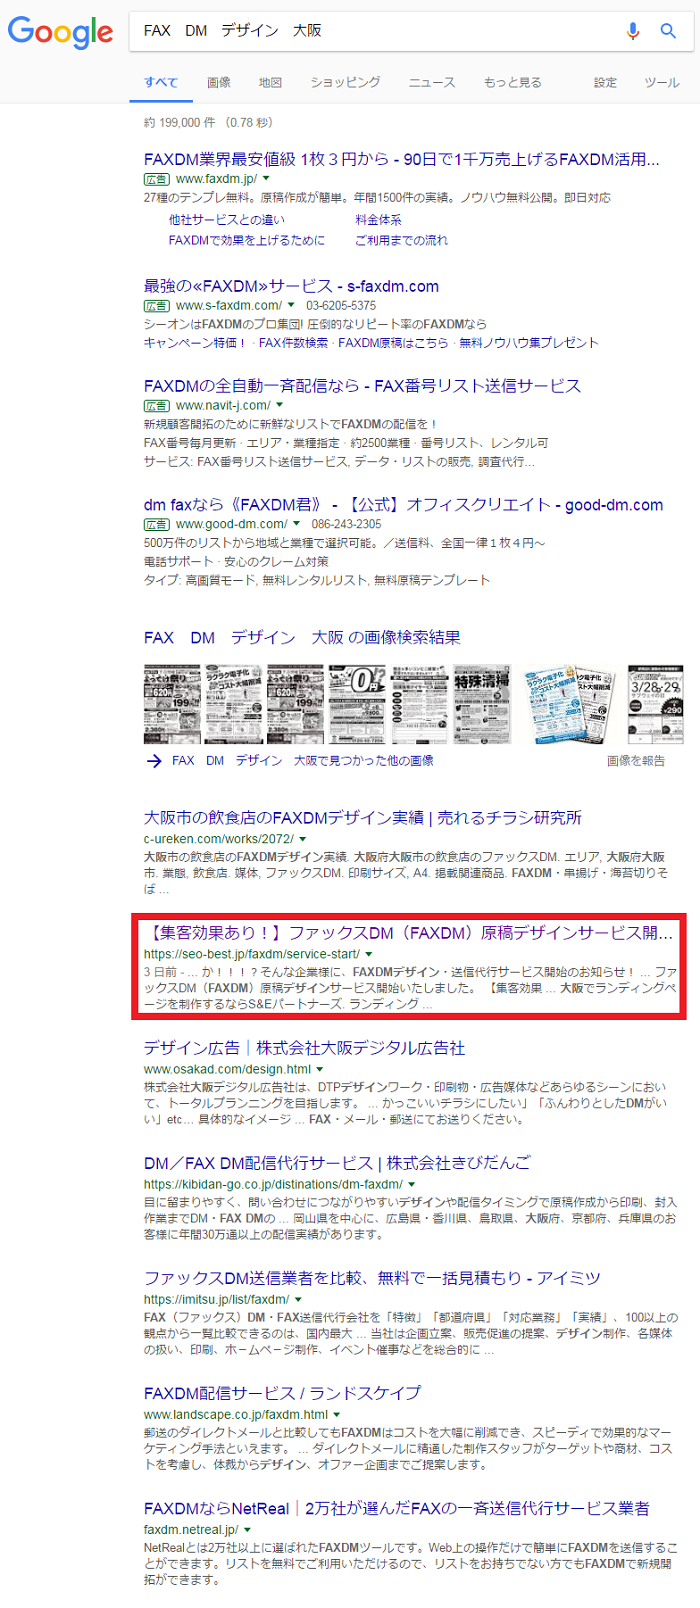 コンテンツ投稿後3日で検索2位表示 Seoスピード上位化達成レポート 大阪seo対策サポート S Eパートナーズ株式会社